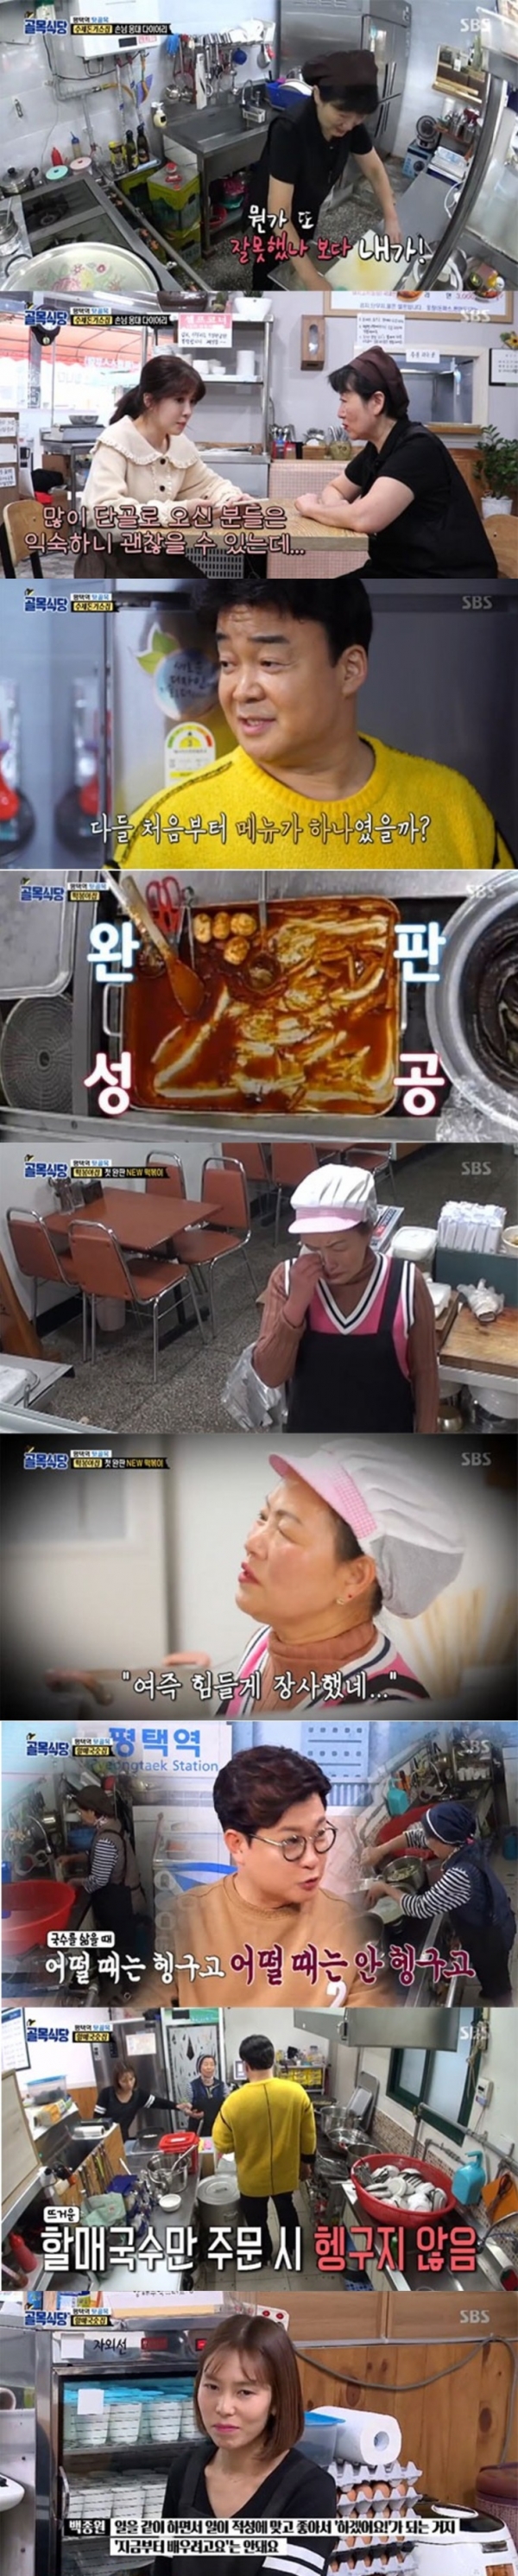 27일 방송된 SBS 예능 '백종원의 골목식당' 방송화면